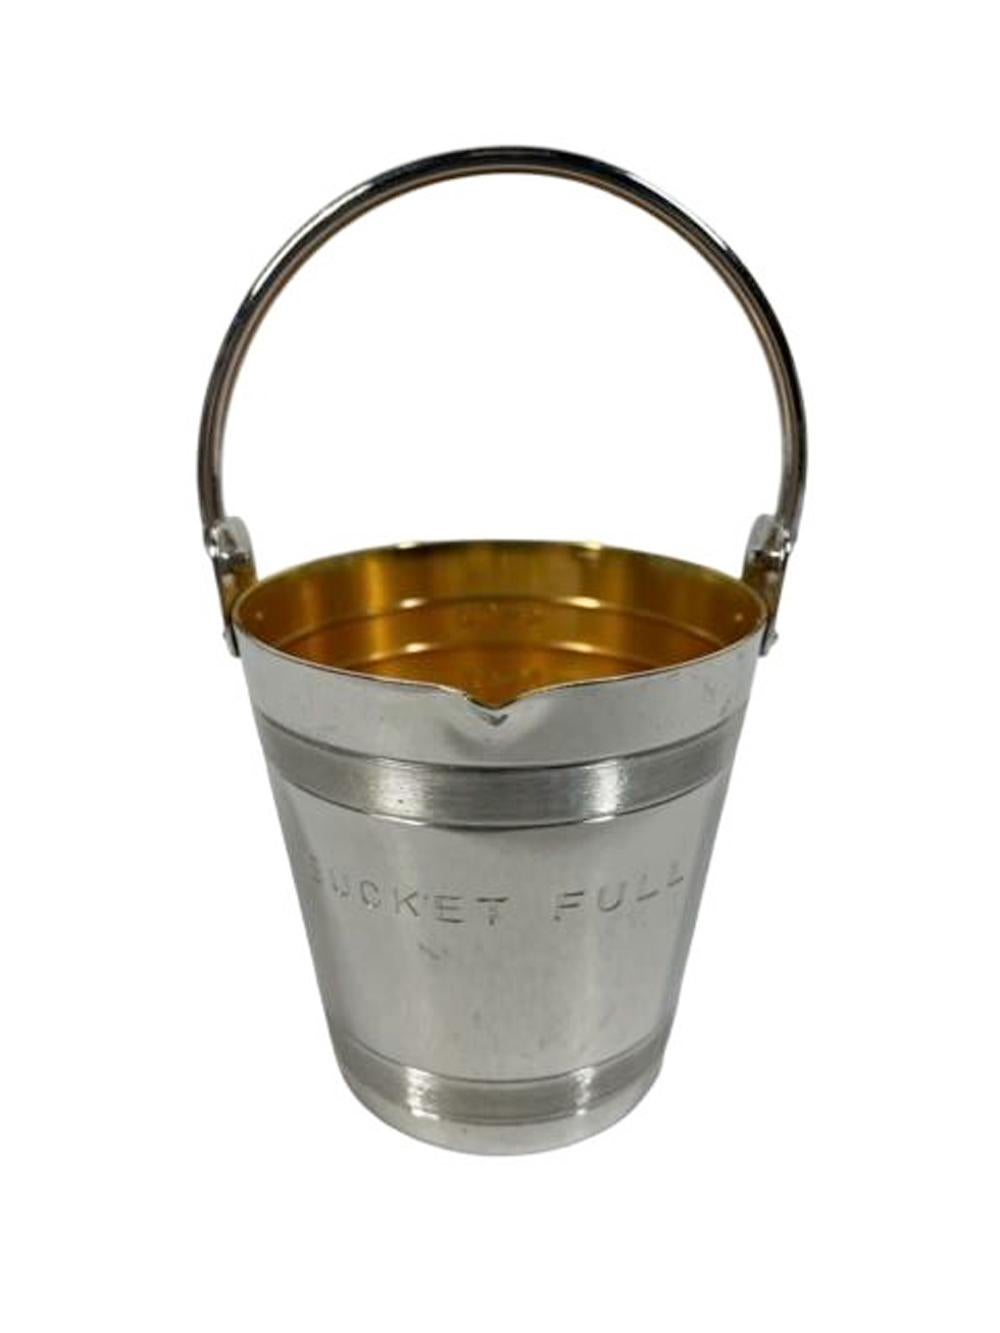 Difficile da trovare - Napier Art Deco Silver Plate "Bucket Full" misuratore di alcolici da 4 oz